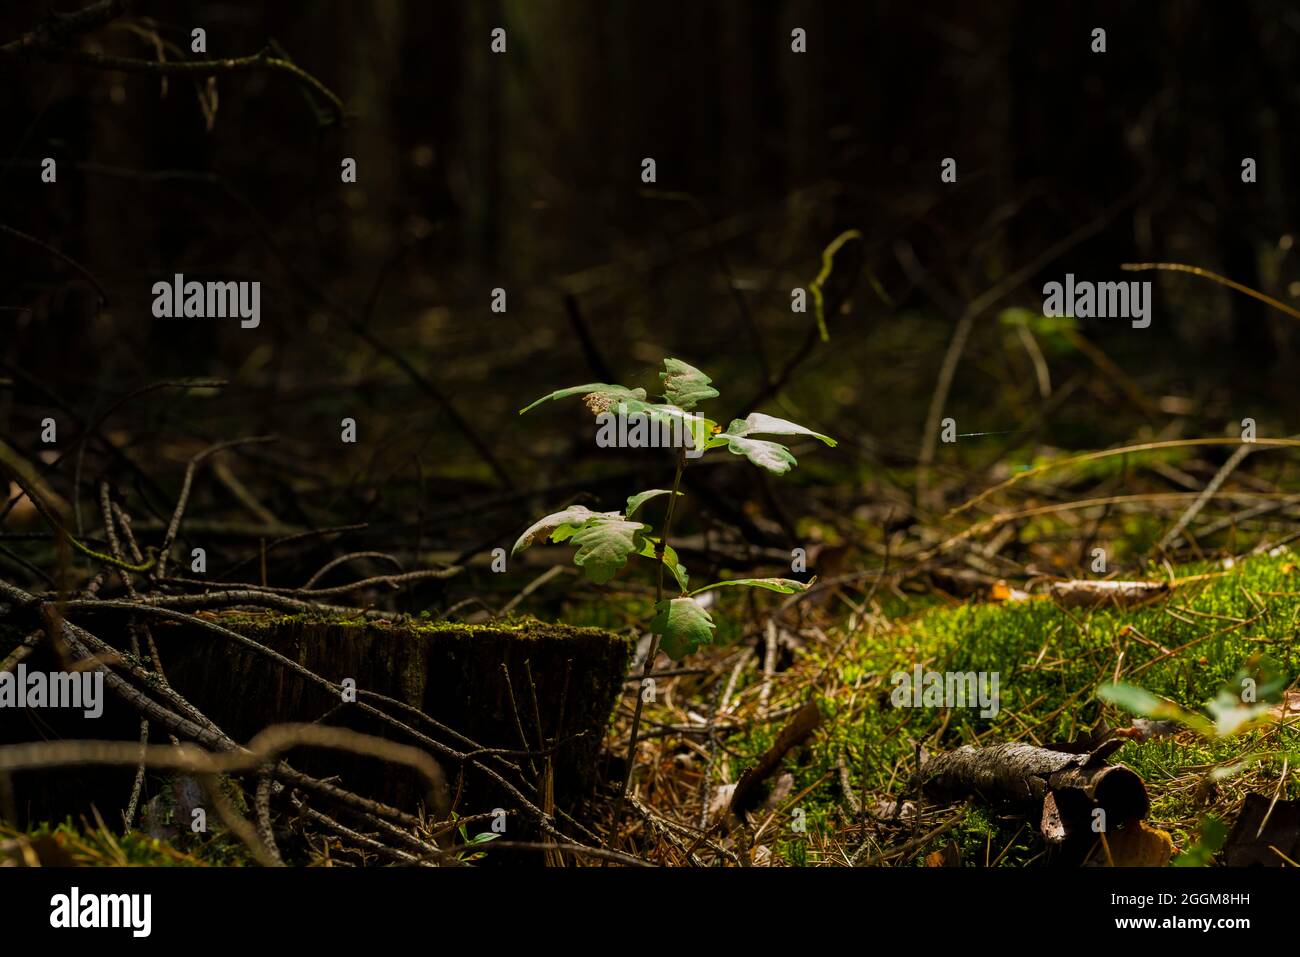 Un roble joven en verano en Alemania en el bosque, ambiente de iluminación discreta Foto de stock